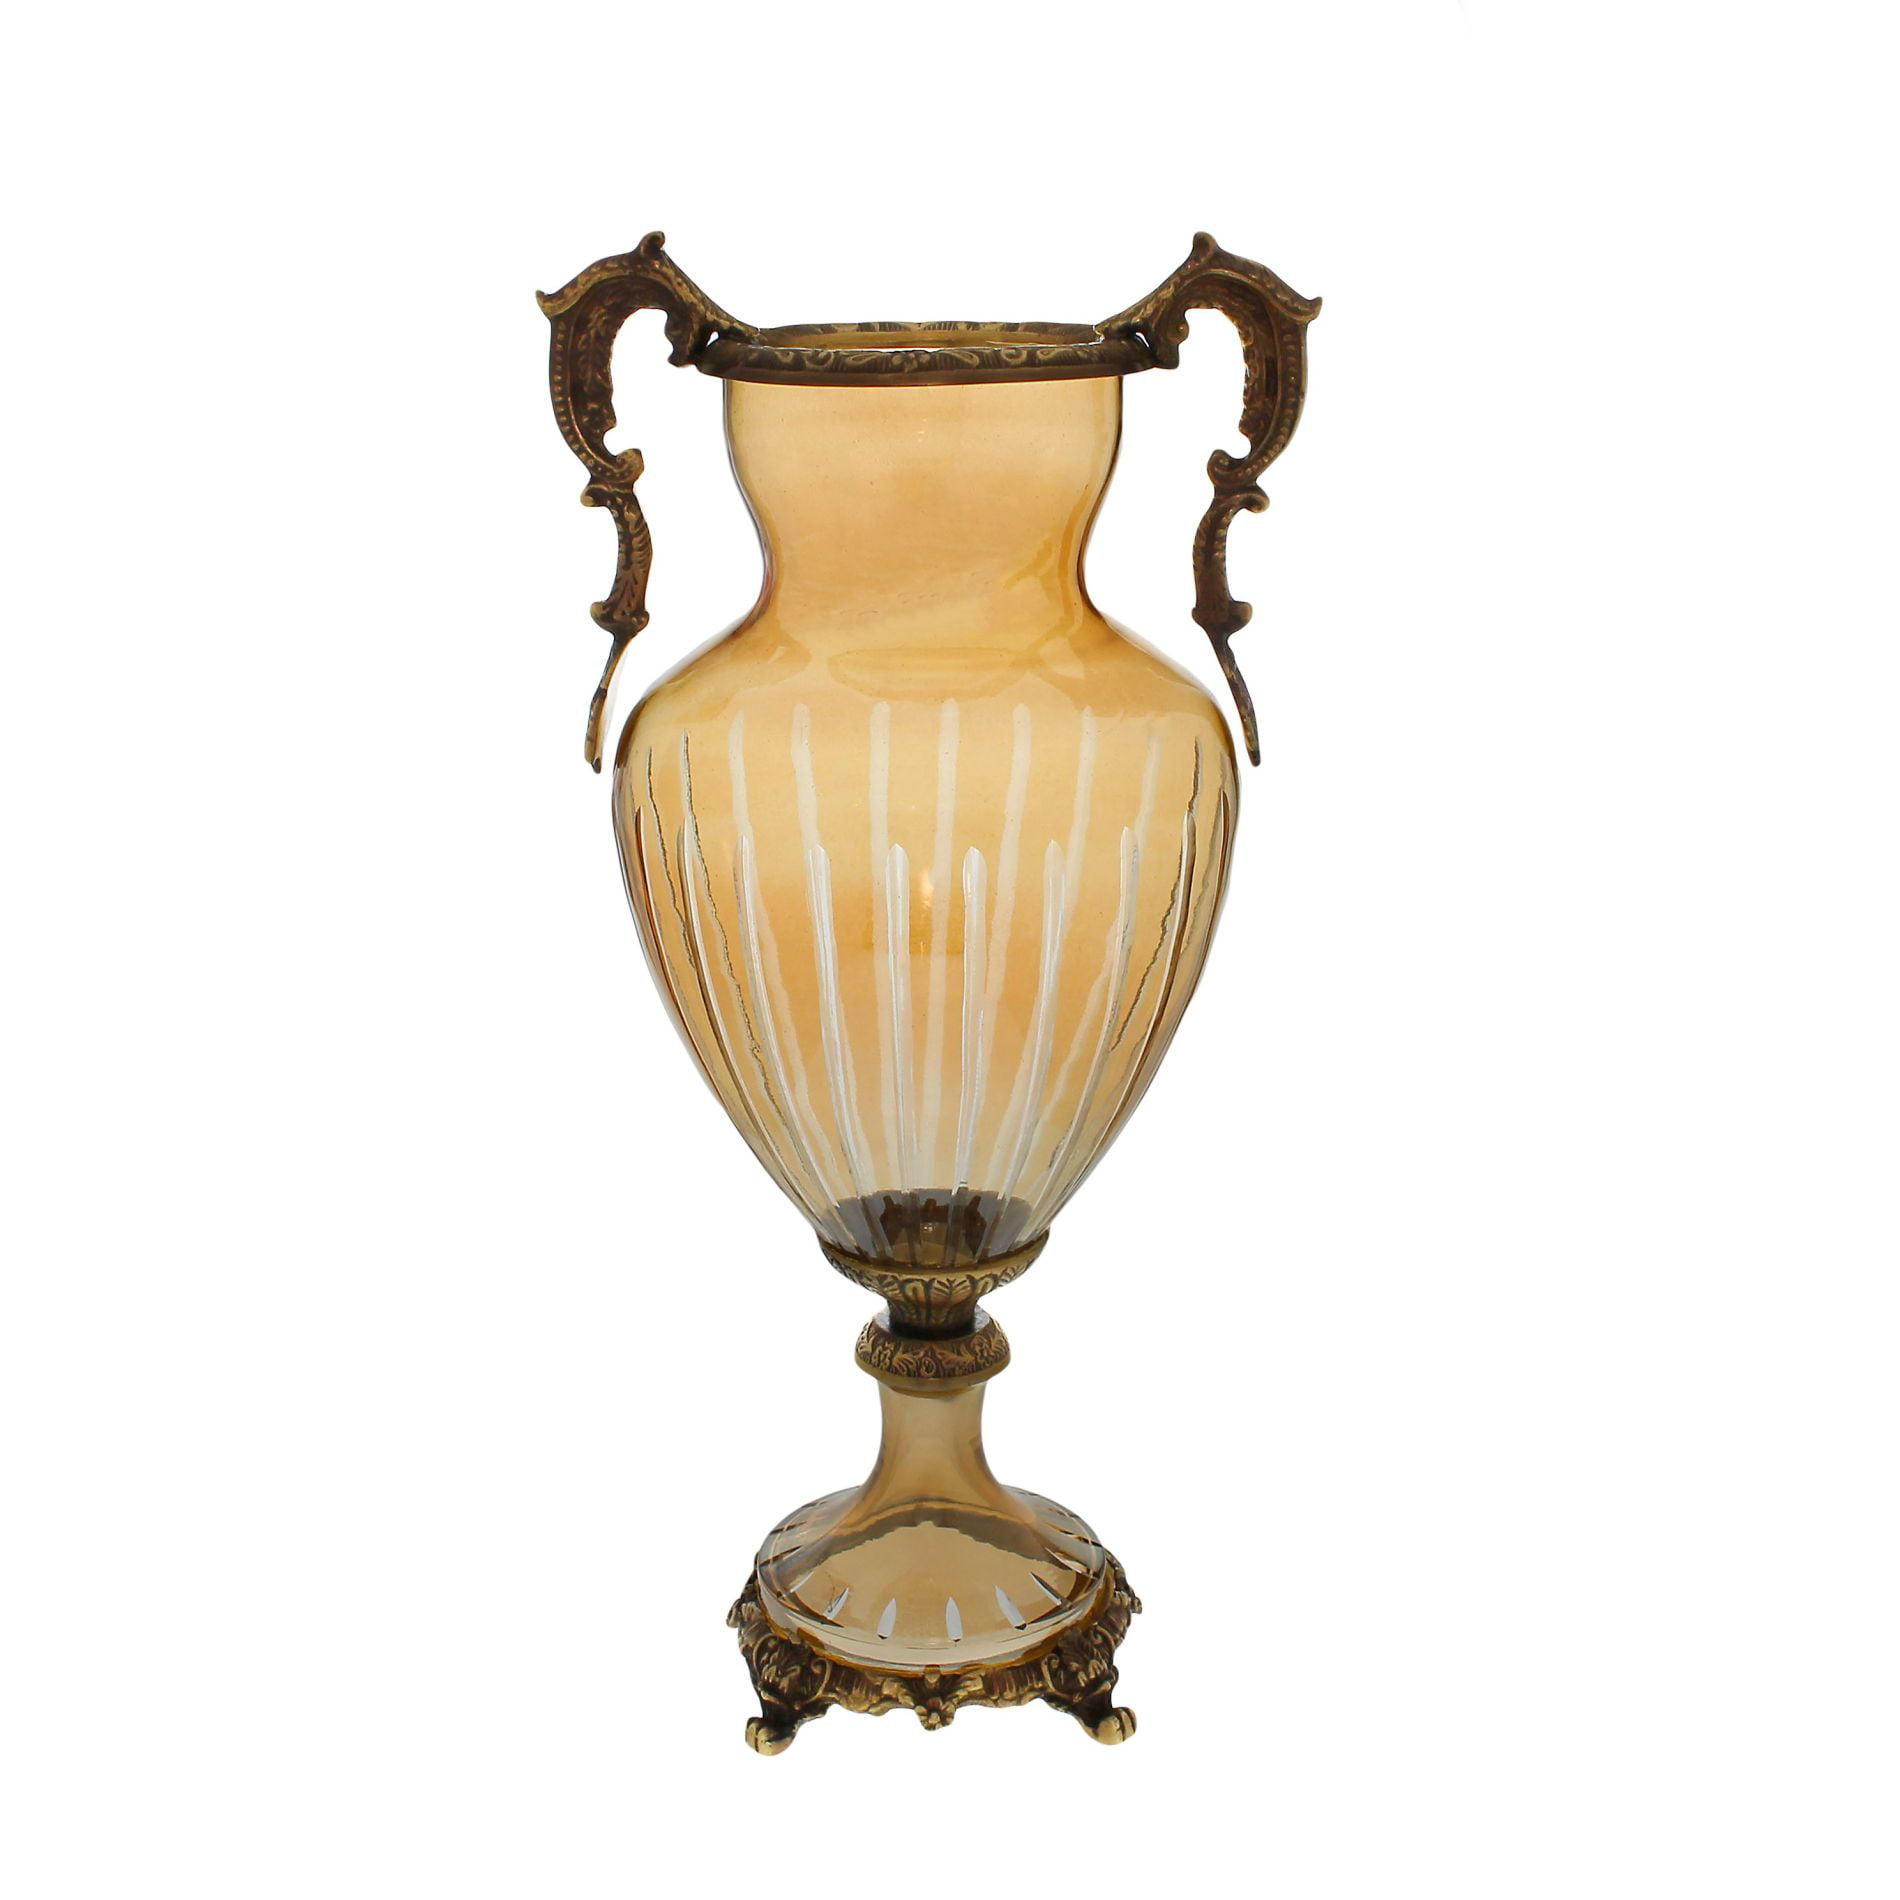 14"H Amber Floral  Decorative Handcrafted Vase Urn Bowl 